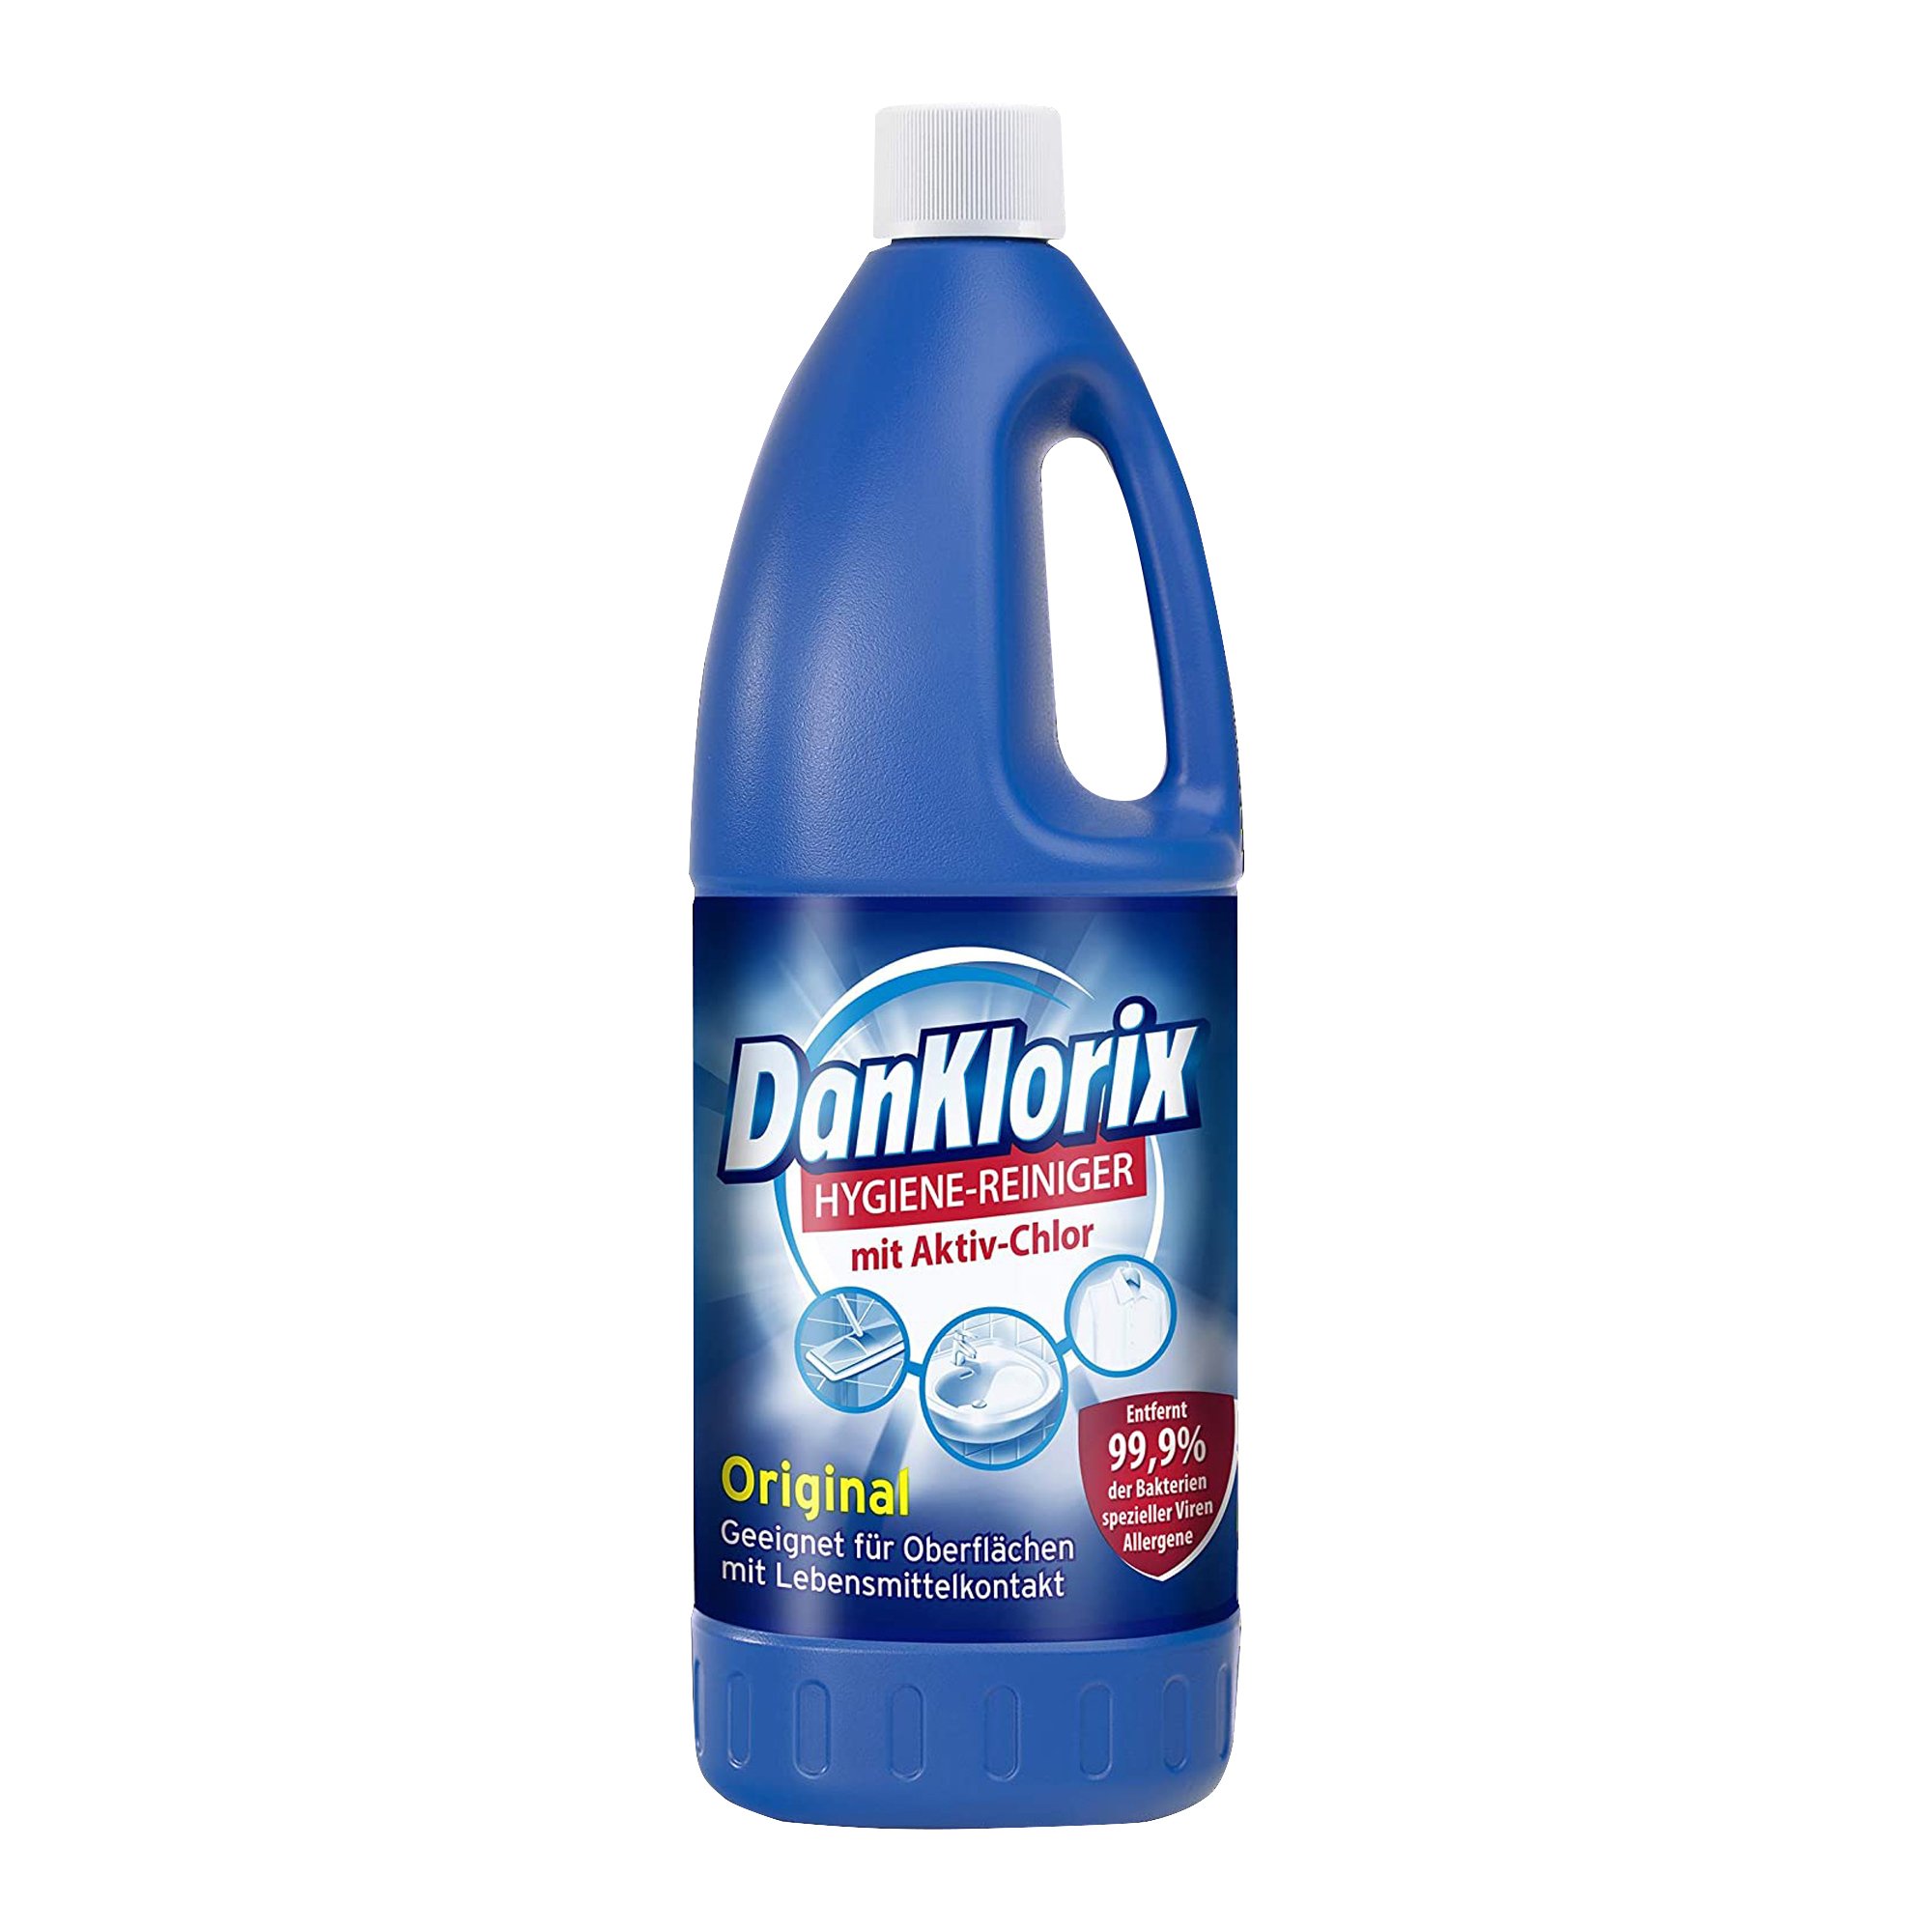 DanKlorix Hygienereiniger Original